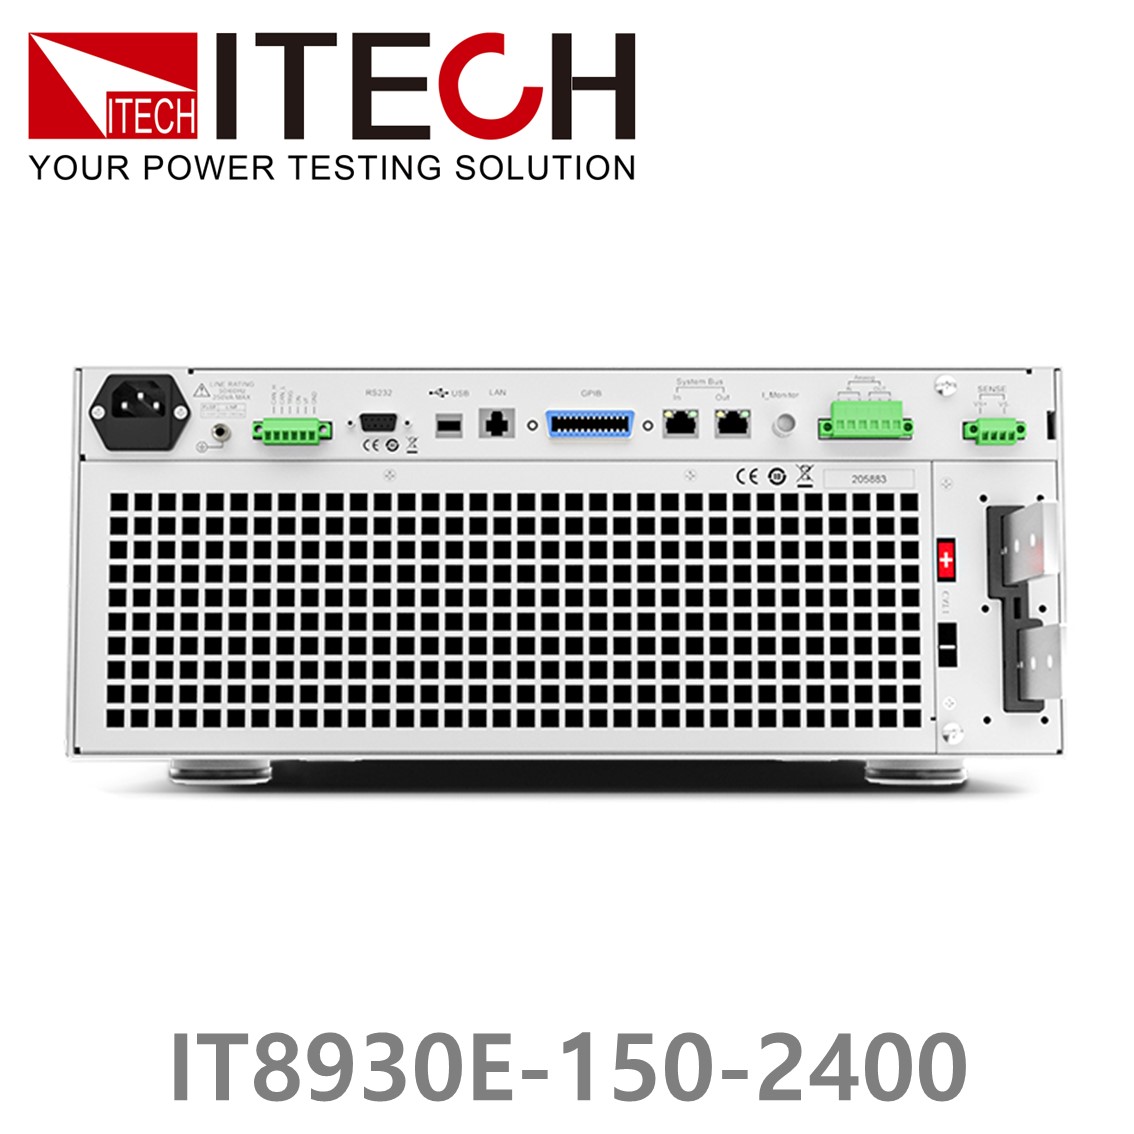 [ ITECH ] IT8930E-150-2400  고성능 고전력 DC 전자로드 150V/2400A/30kW (27U)